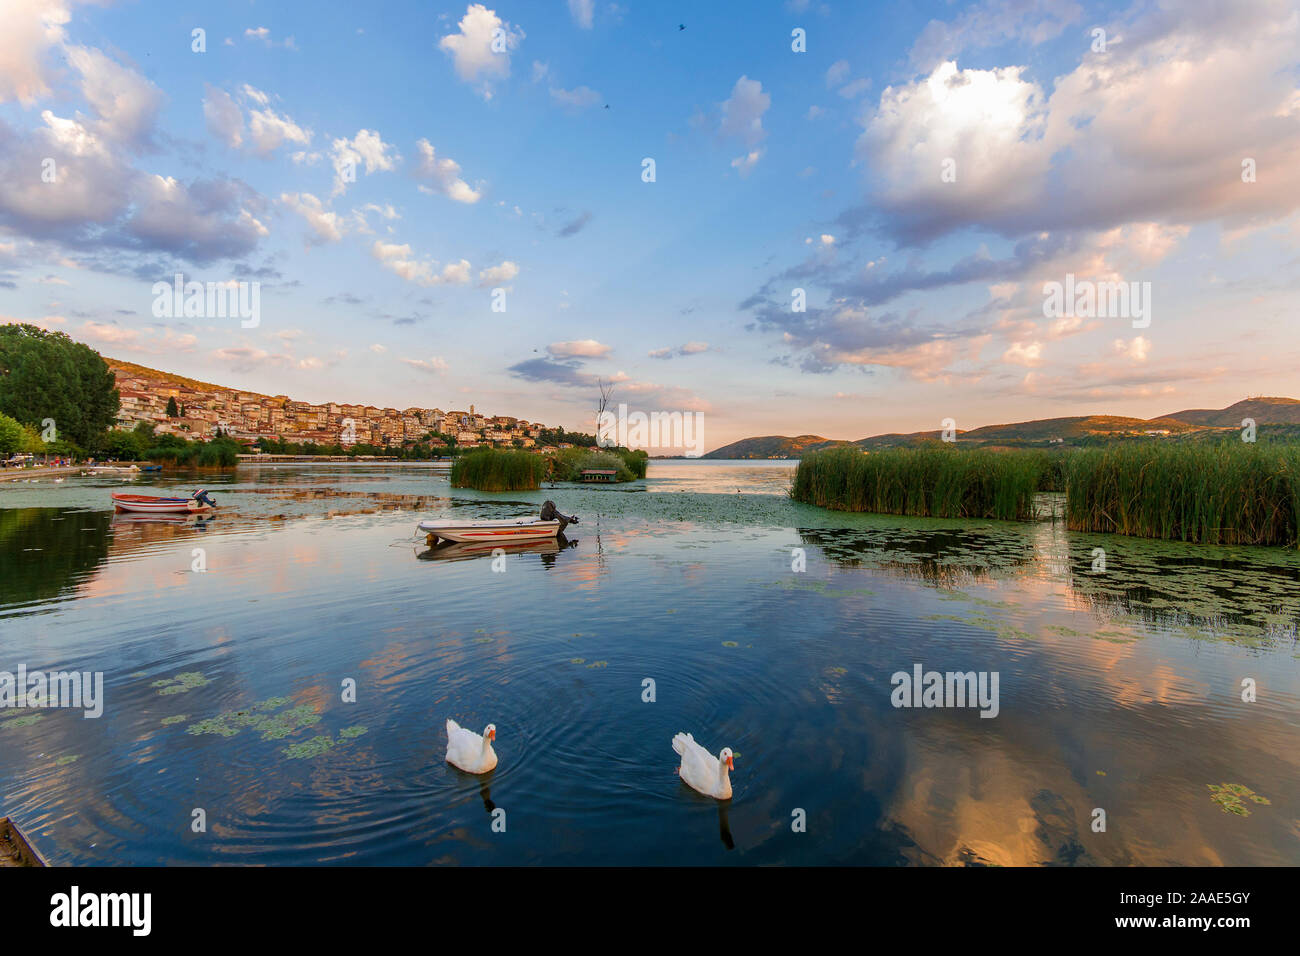 Deux cygnes nageant dans un lac paisible. La ville de Kastoria, Grèce du Nord, visible à l'arrière-plan. Ciel bleu et le coucher du soleil les couleurs. Banque D'Images